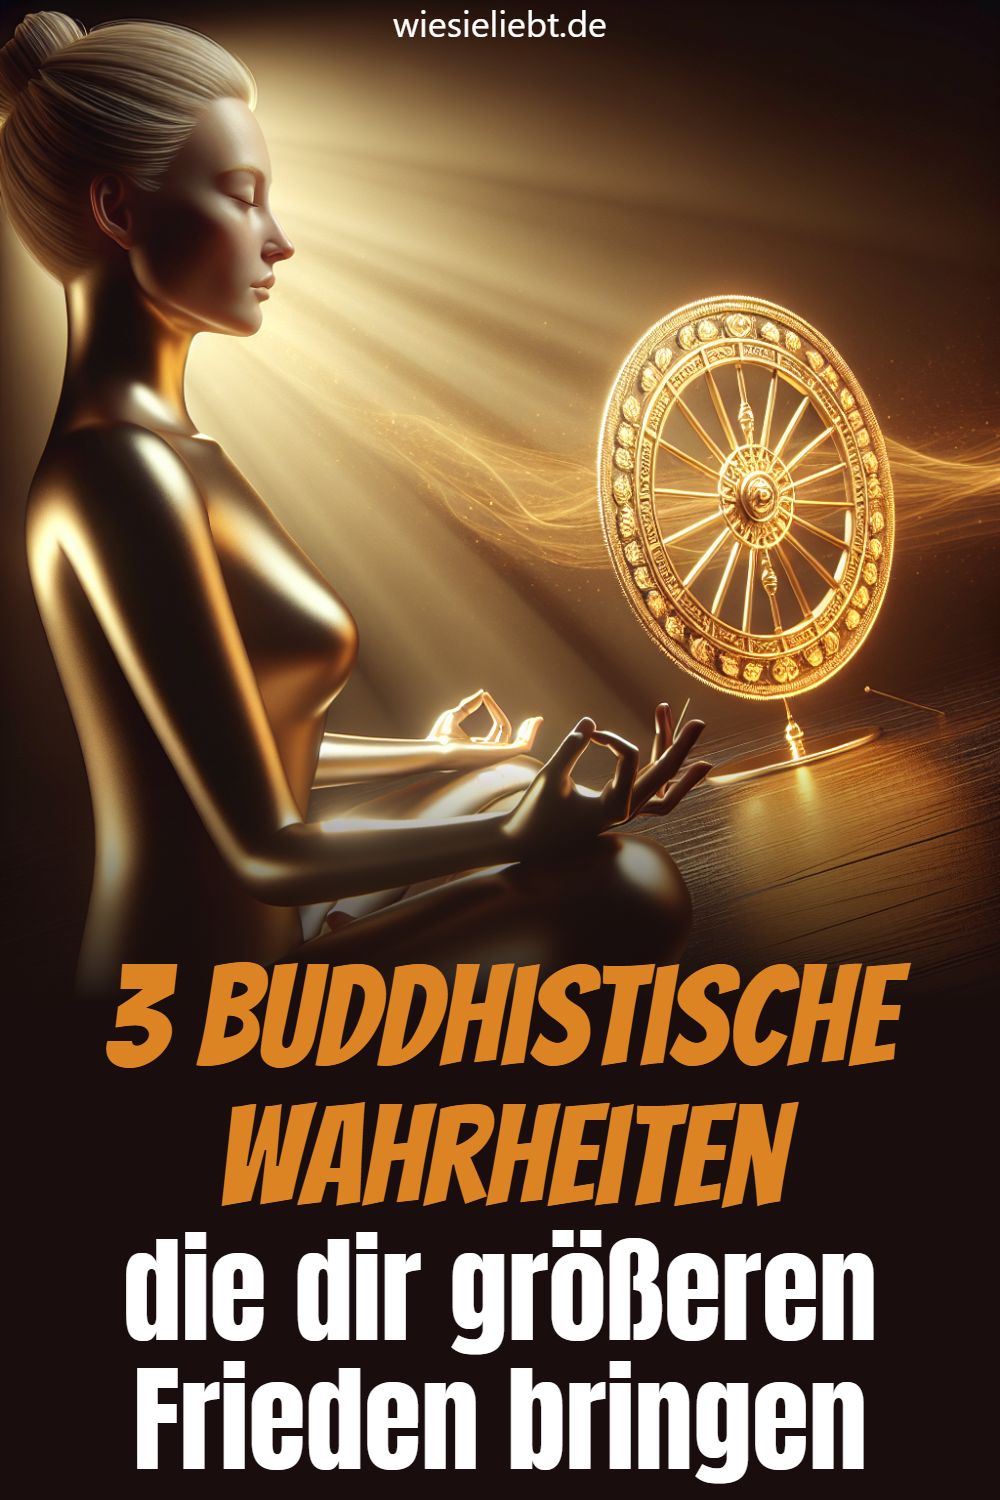 3 Buddhistische Wahrheiten die dir größeren Frieden bringen